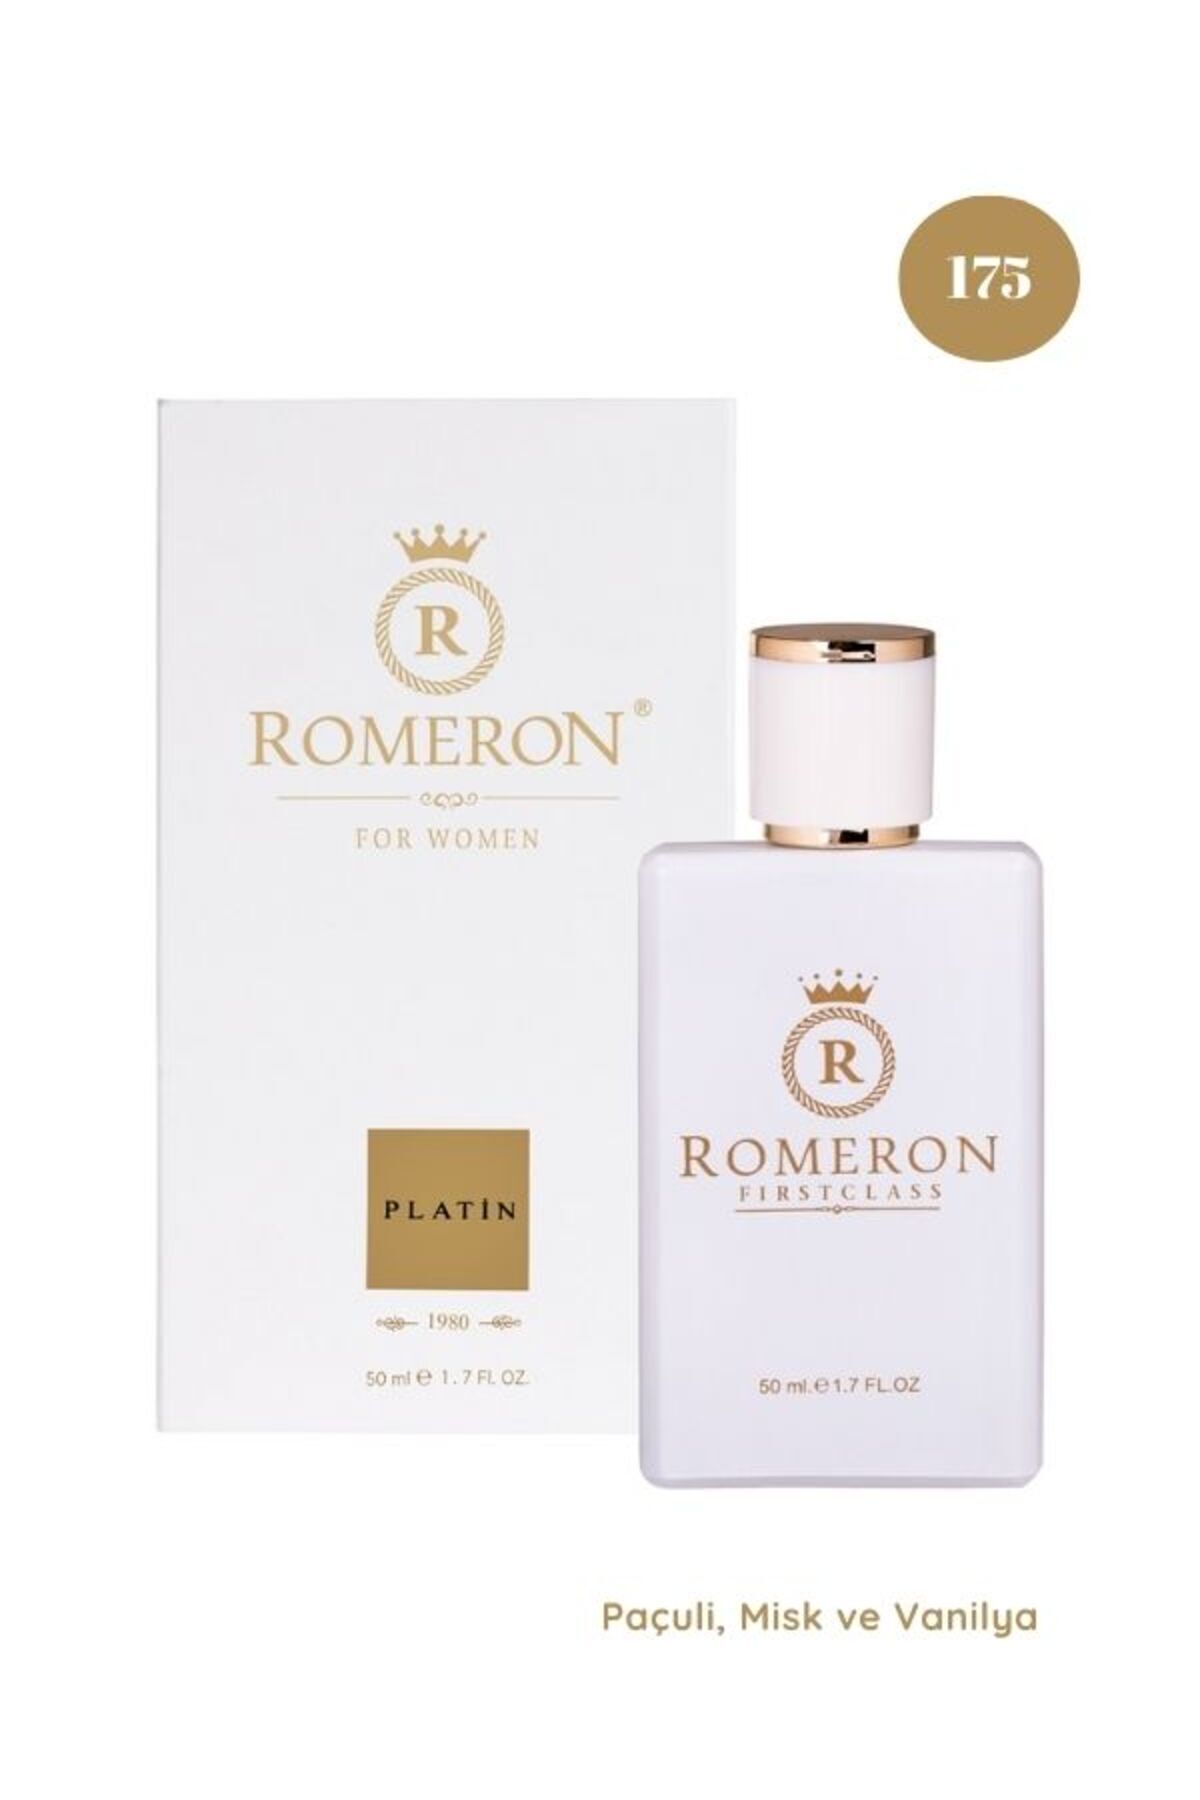 ROMERON 175 Platin Kadın Parfüm Edp 50ml